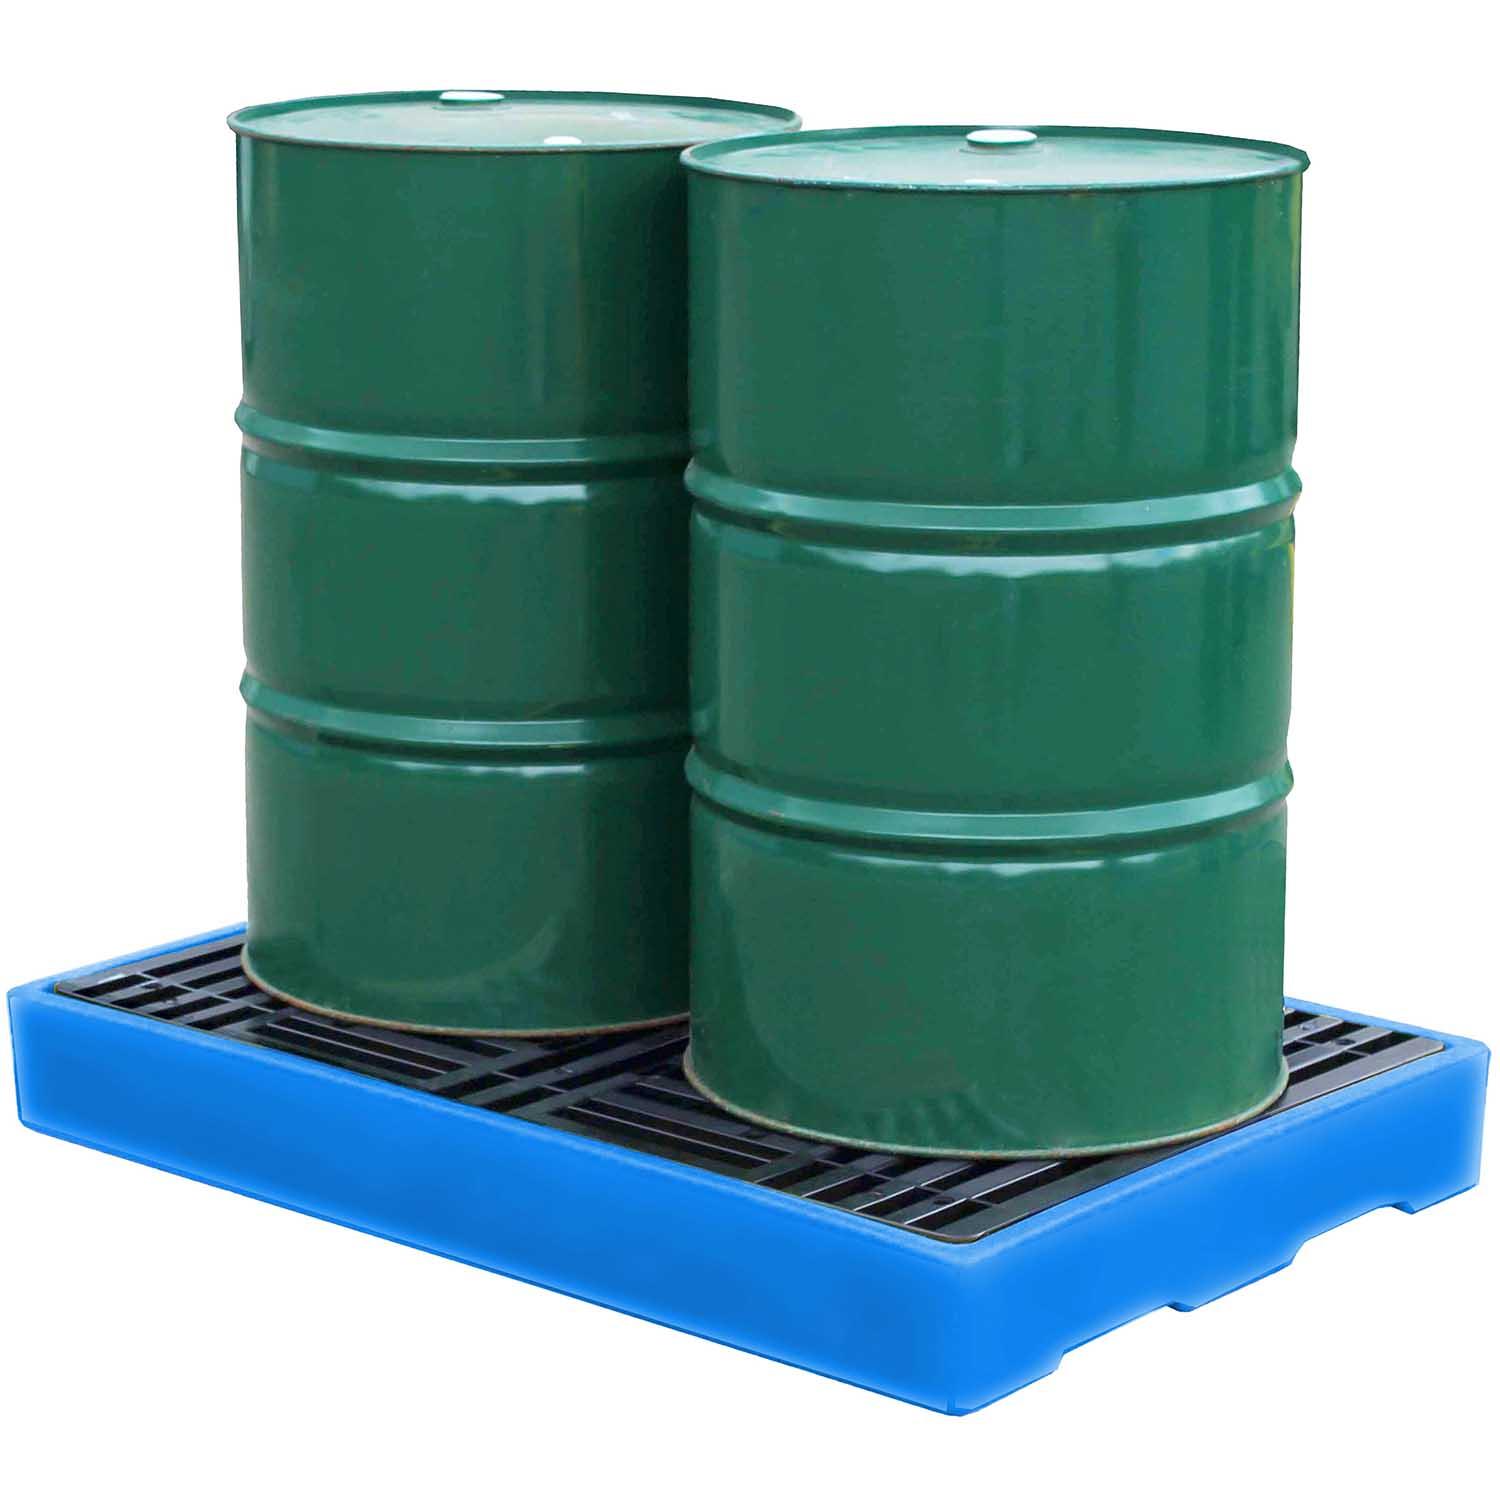 Flächenschutzelement aus Polyethylen (PE) für 2 Fässer, Auffangvolumen 150 l, mit PE-Rost